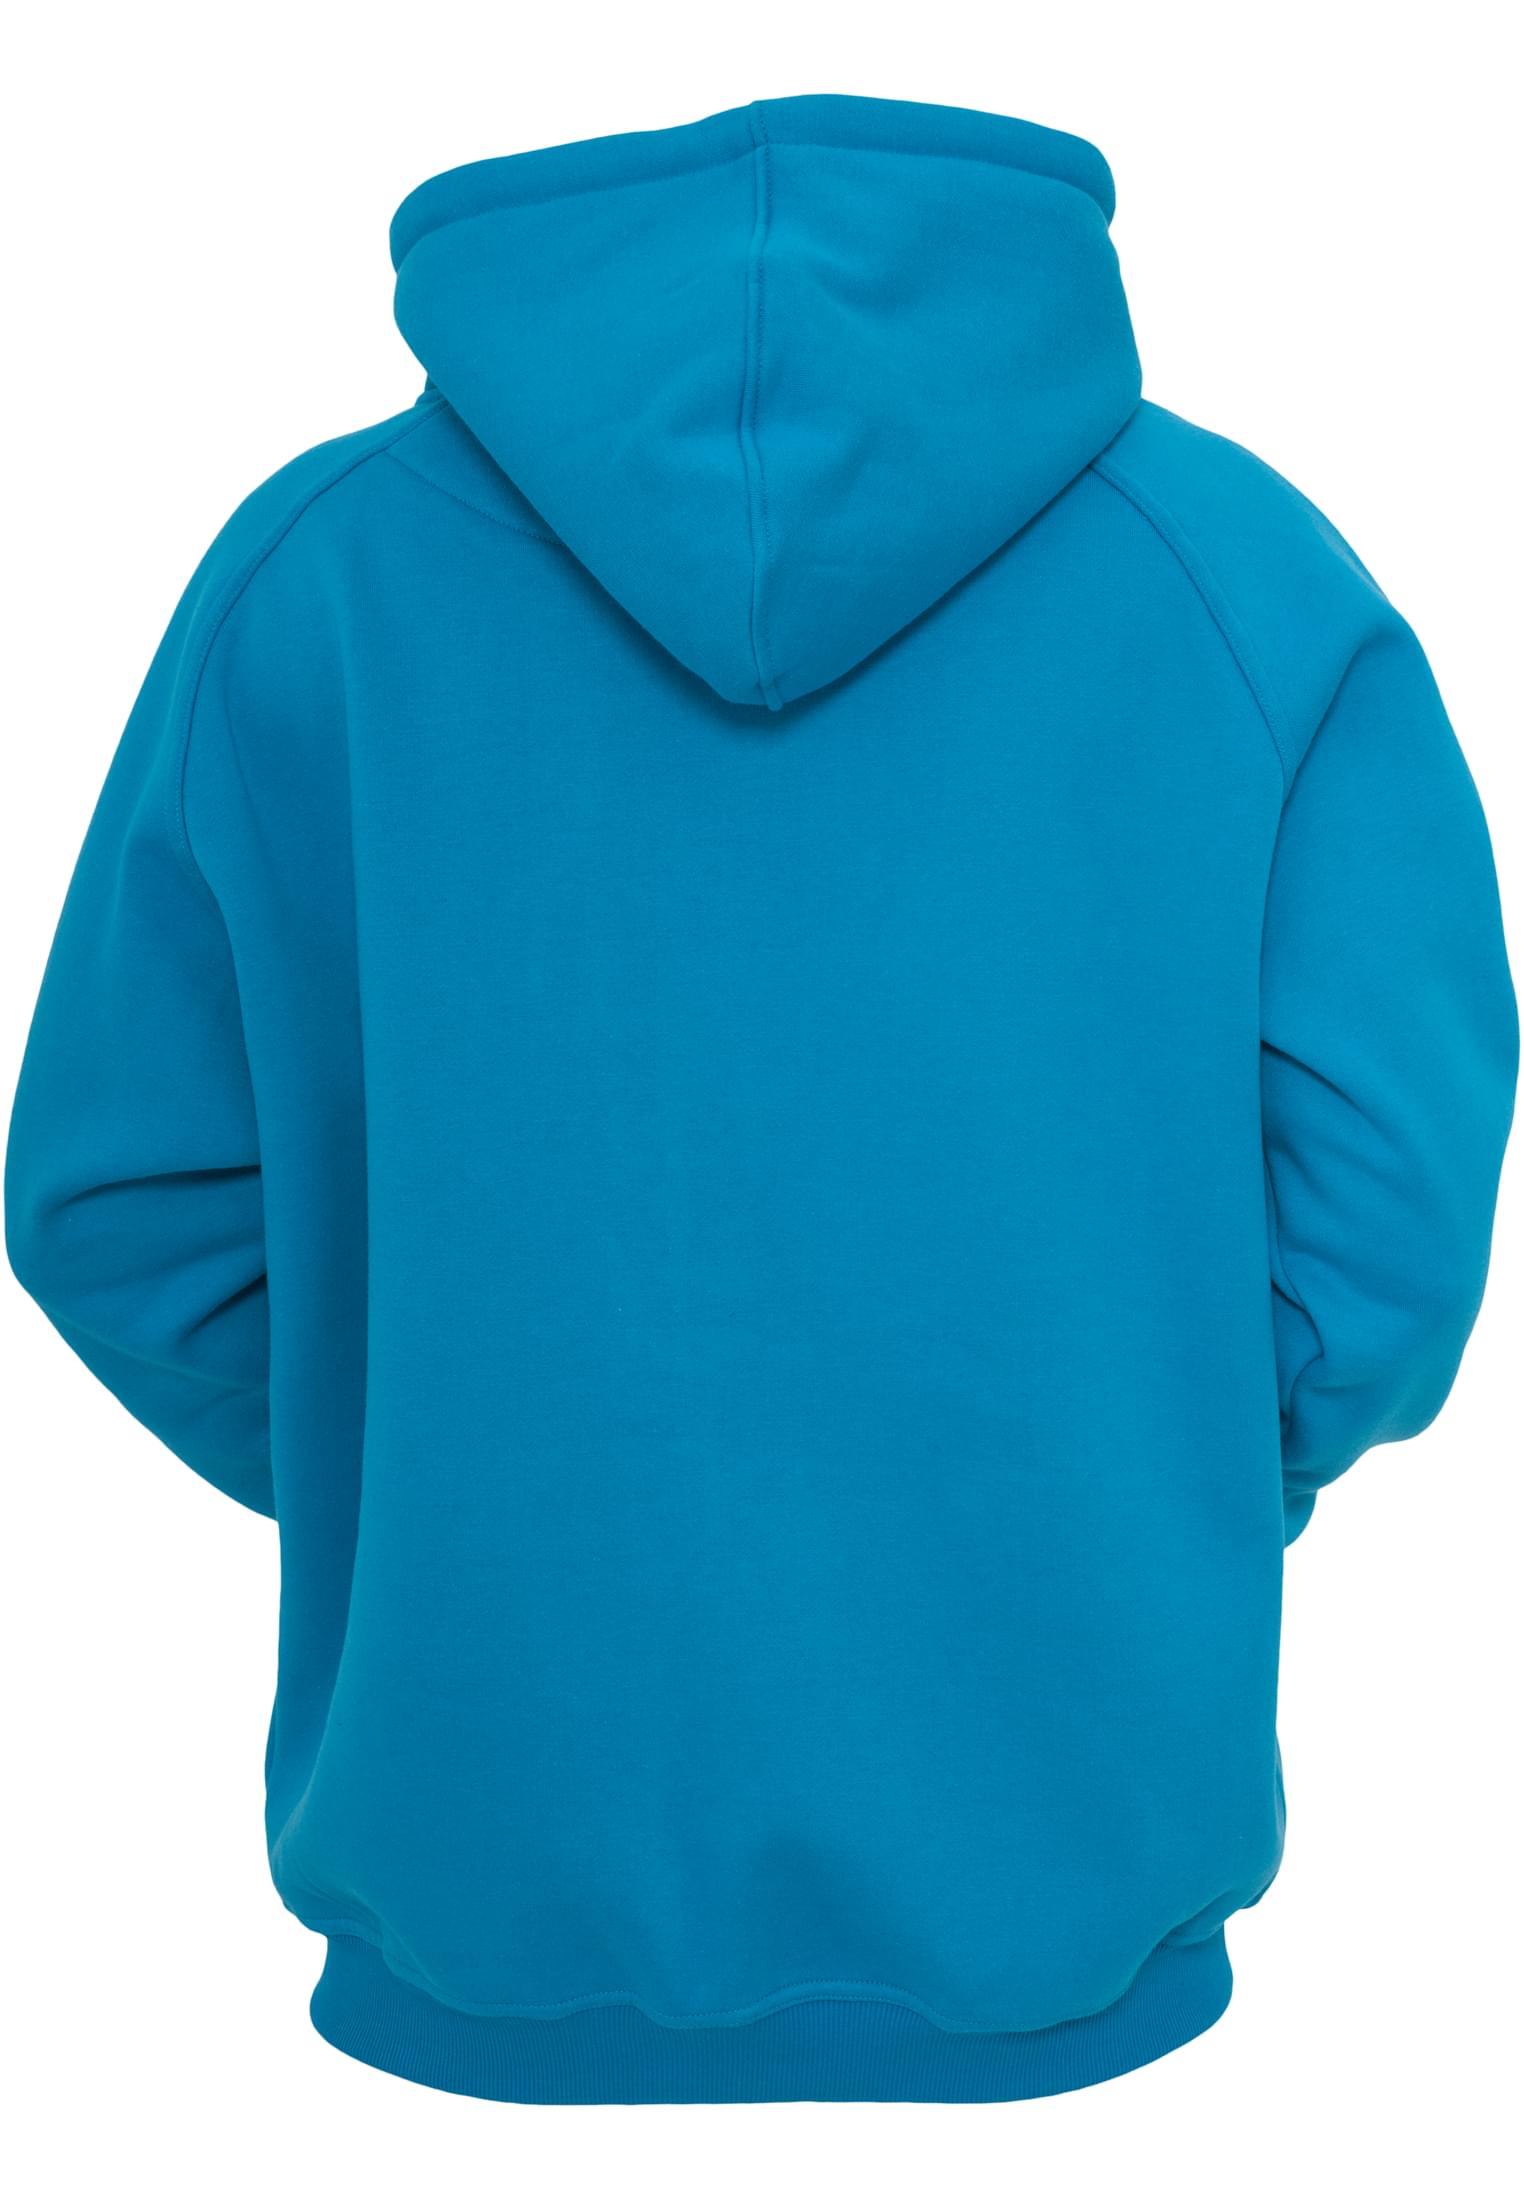 Zip-Hoodies Zip Hoody in Farbe turquoise